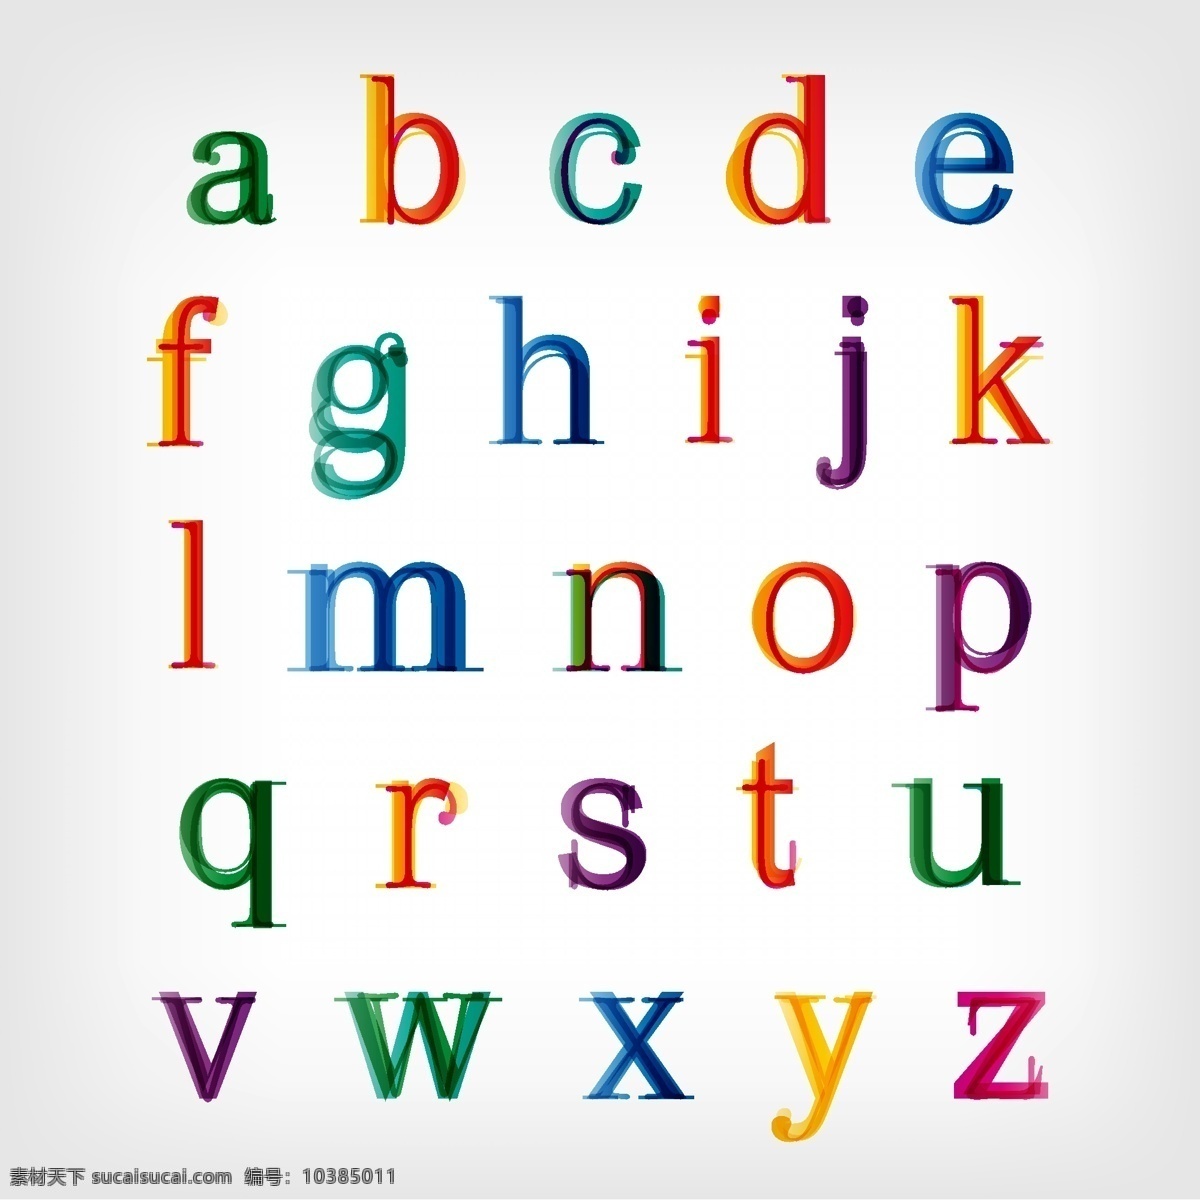 彩色英语字母 彩色 英语字母 文字 艺术字体 书画文字 文化艺术 矢量素材 白色